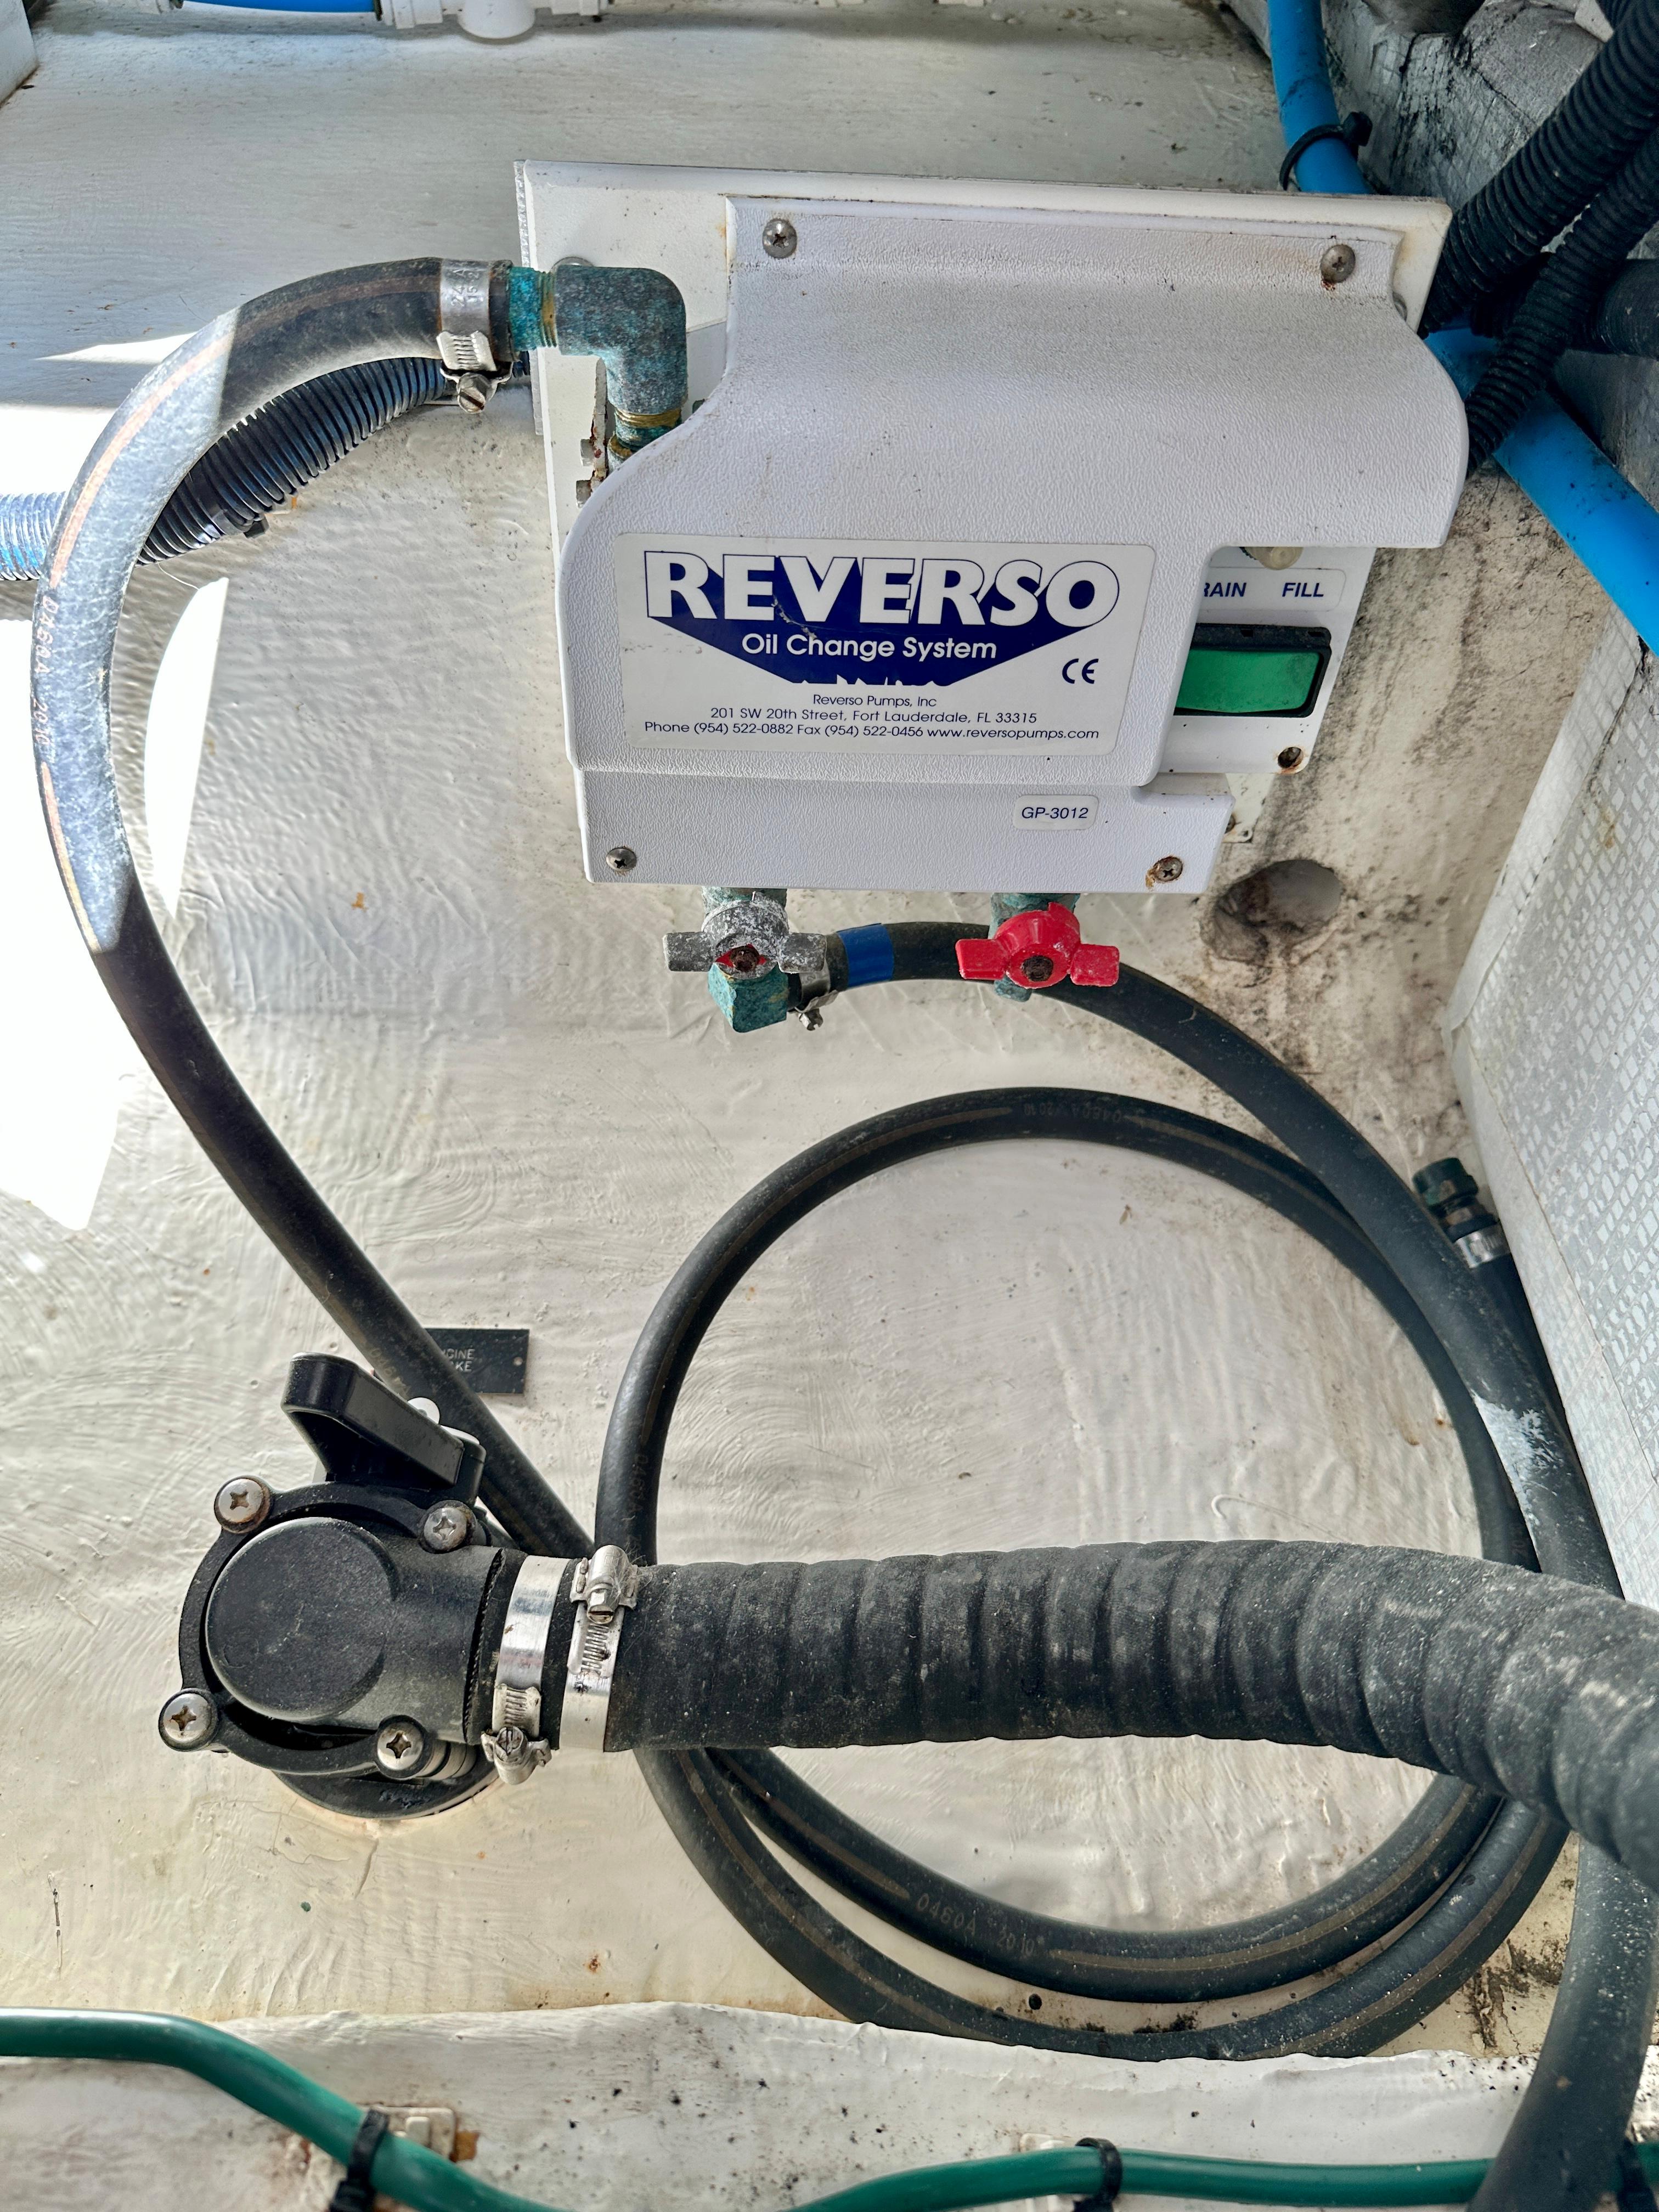 Engine Room - Reverso oil changer